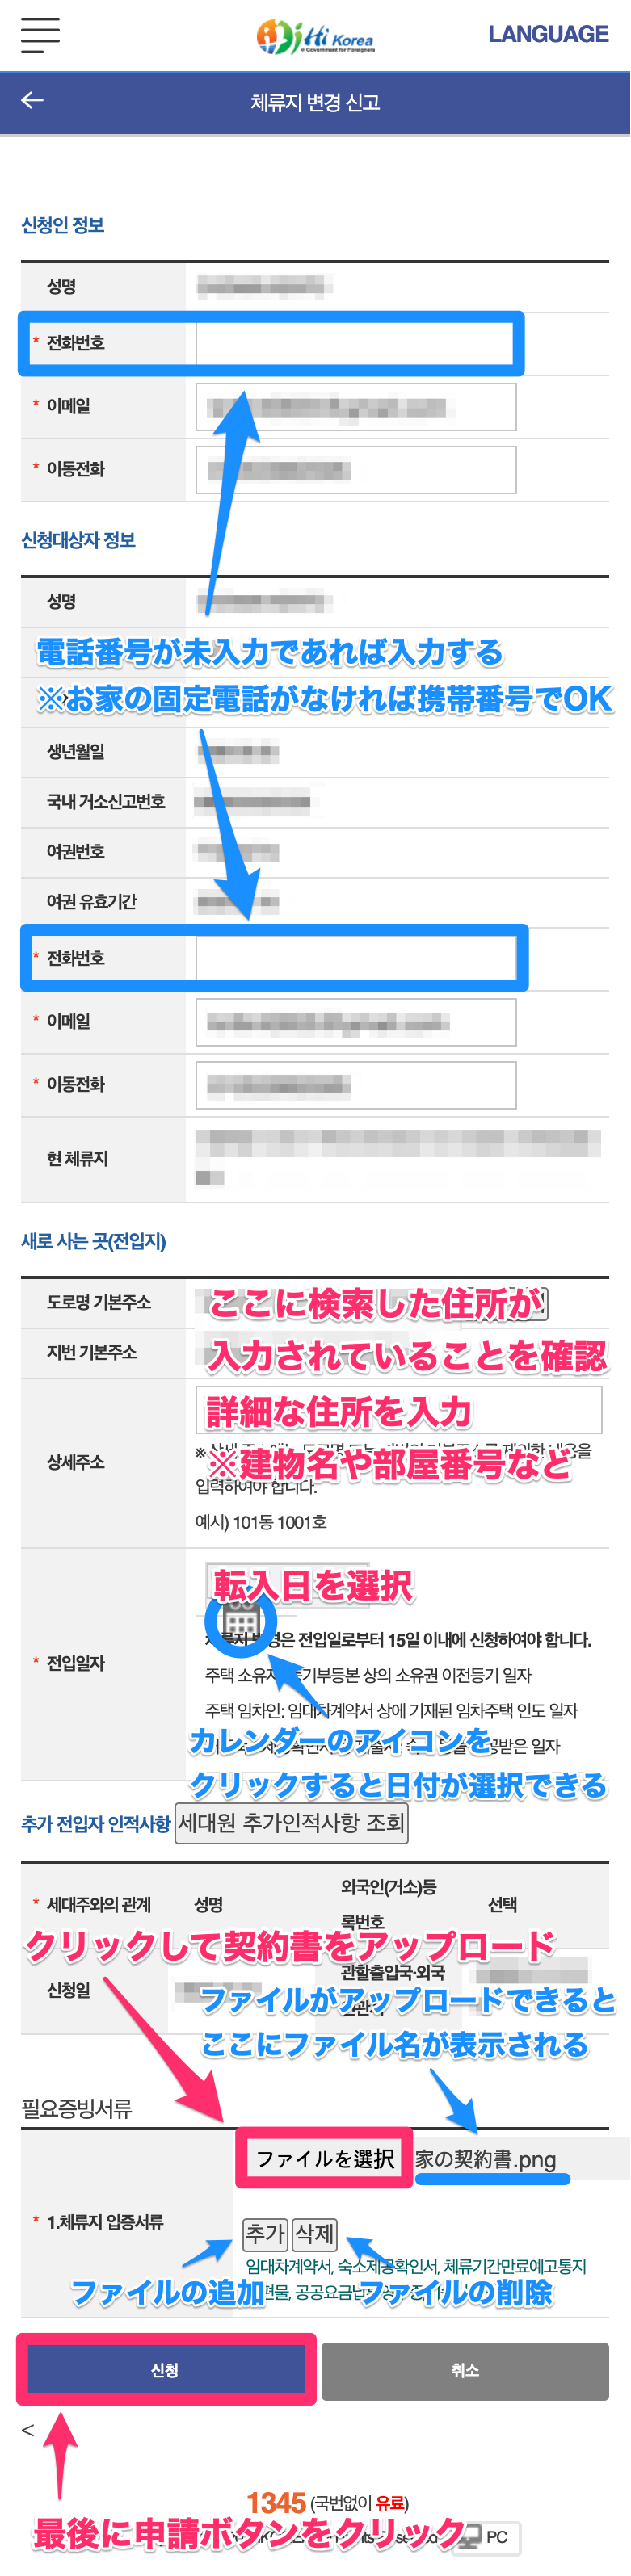 韓国でハイコリア（Hi Korea）というサイトを利用してオンラインの住所変更を申請する方法